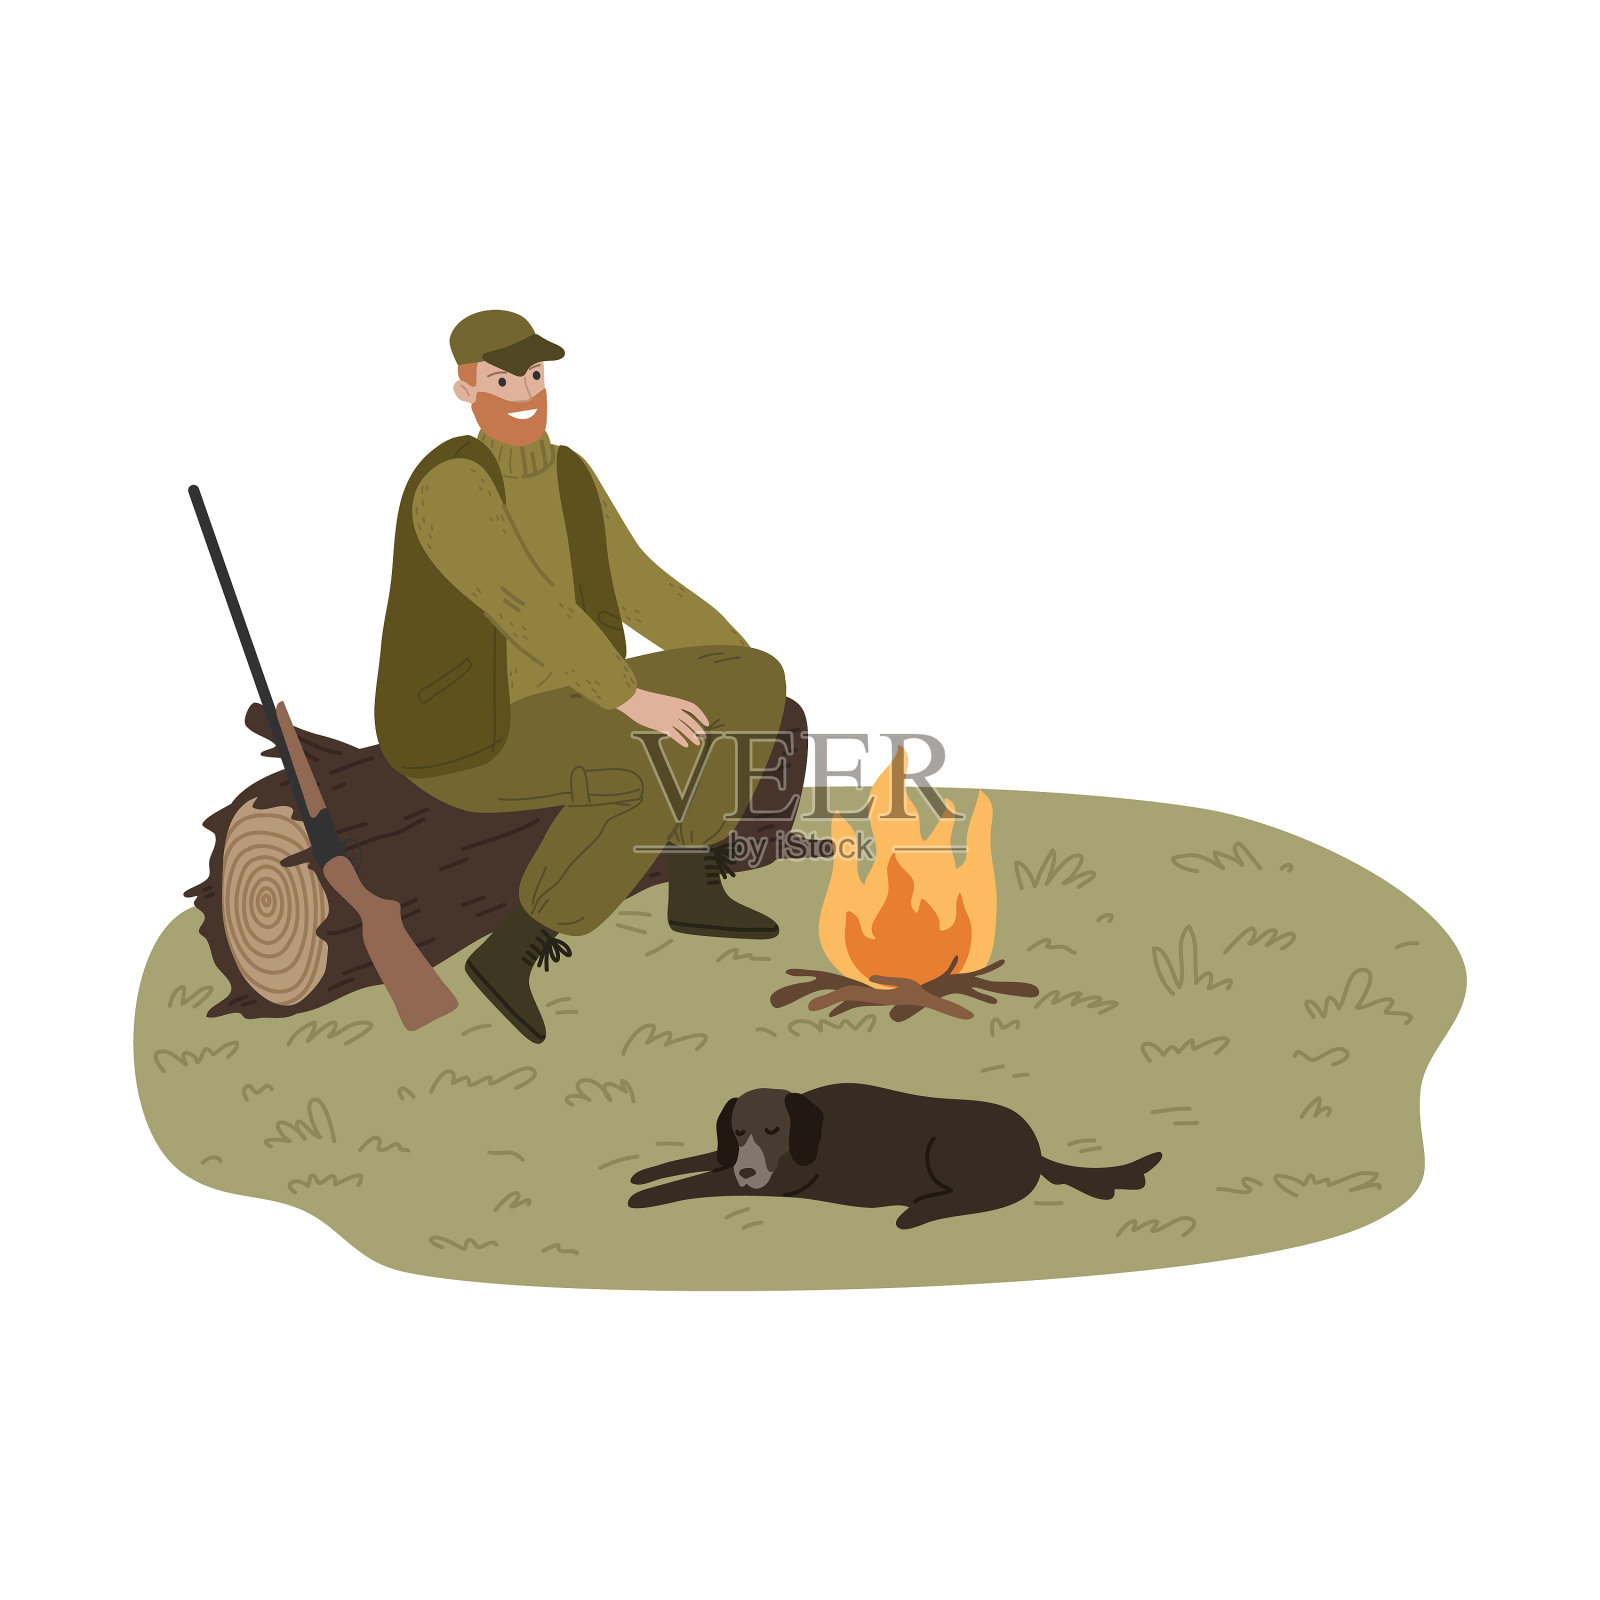 獵人與狗在火附近升溫設計模板素材